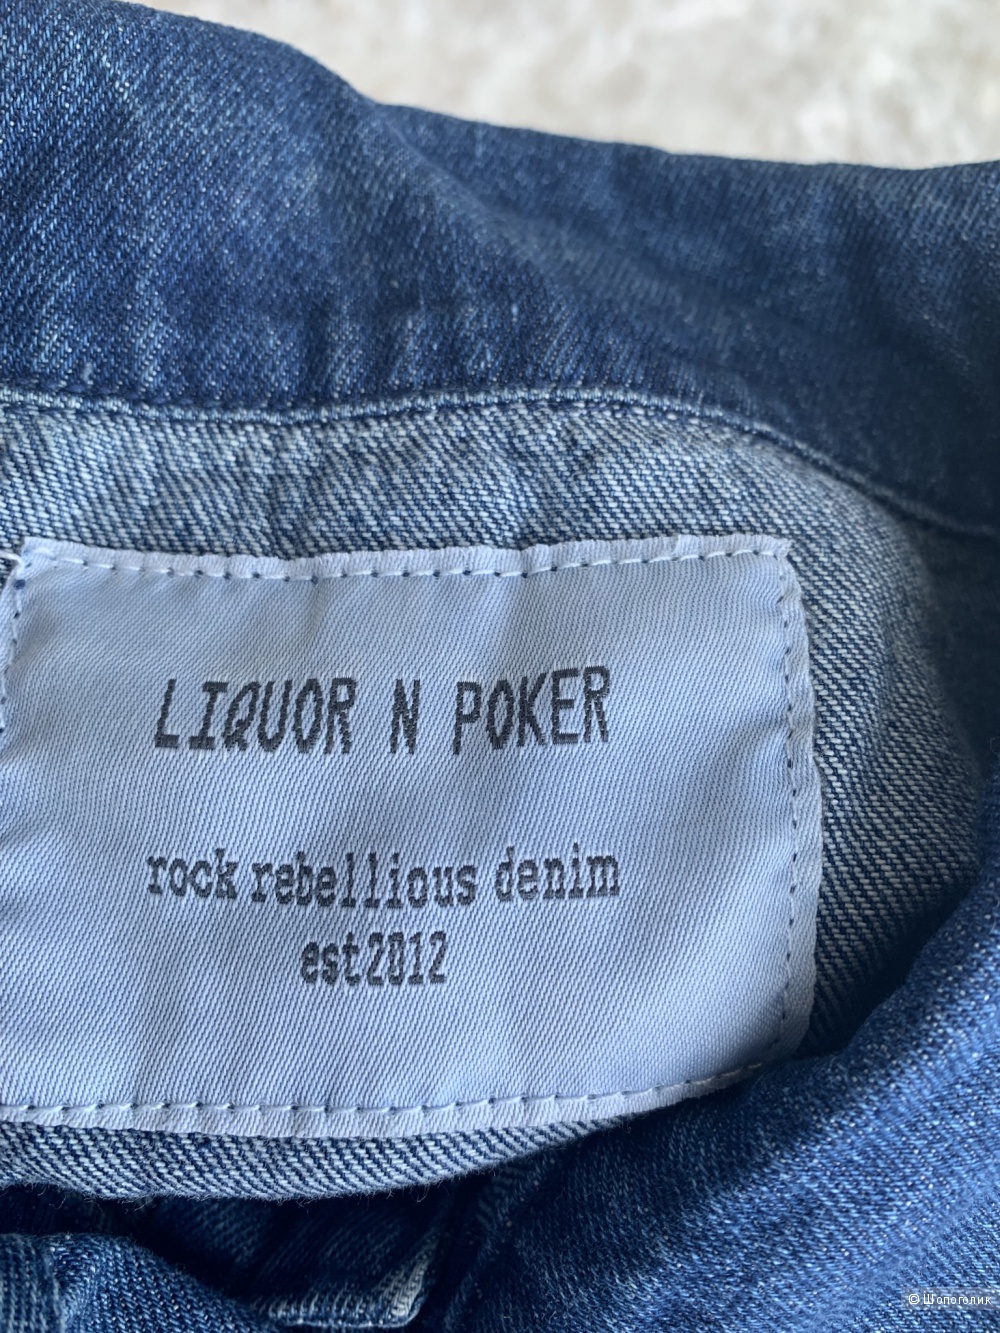 Джинсовая куртка с нашивками Liquor & Poker /L/48/